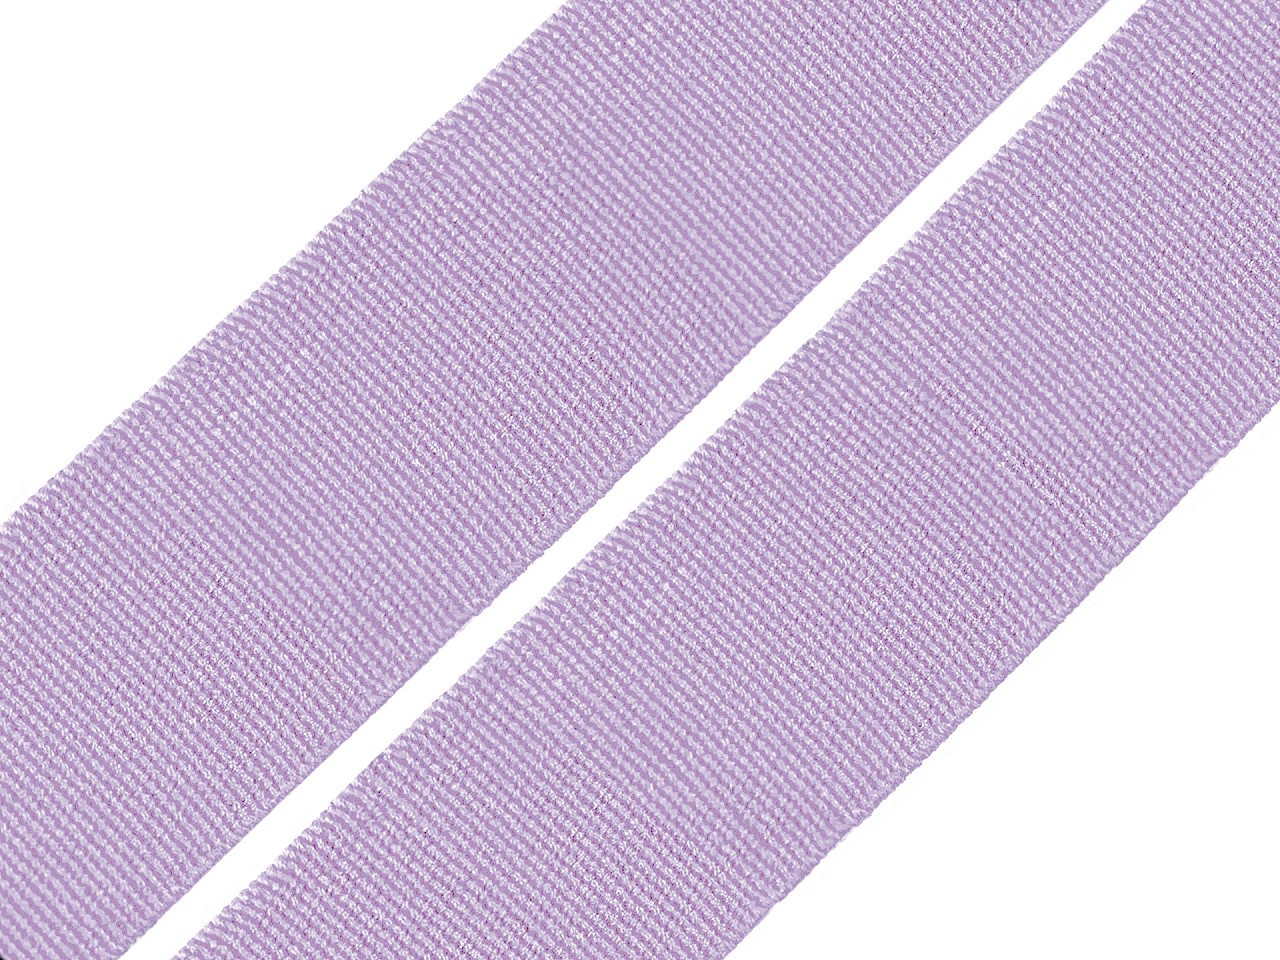 Pruženka hladká šíře 20 mm tkaná barevná, barva 1602 fialová lila